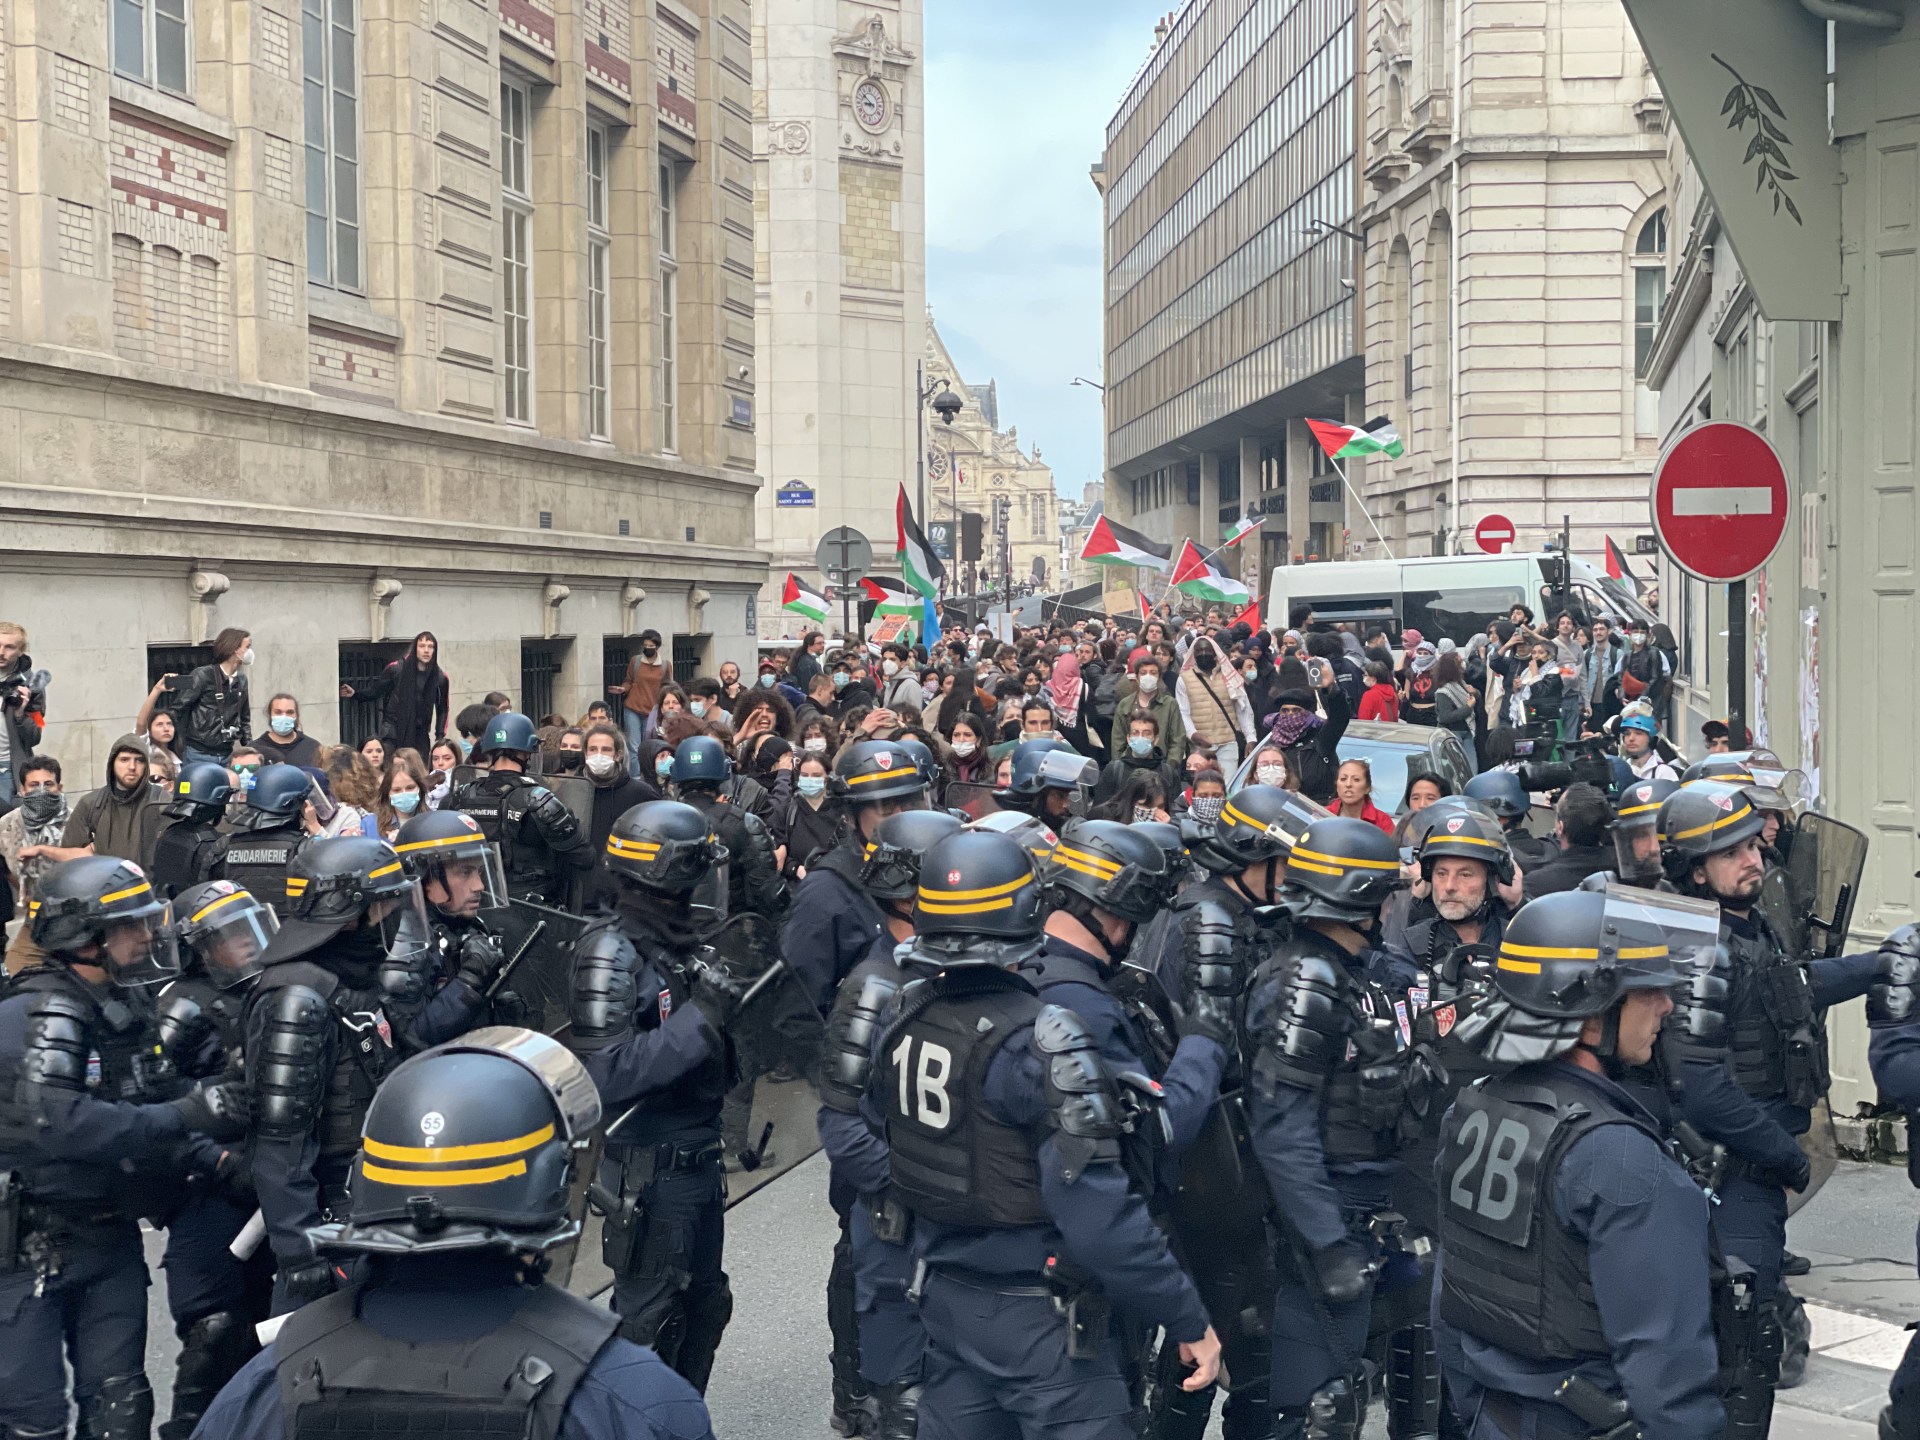 الشرطة الفرنسية تقمع احتجاجات داعمة لغزة بجامعتي السوربون وسيانس بو | أخبار – البوكس نيوز